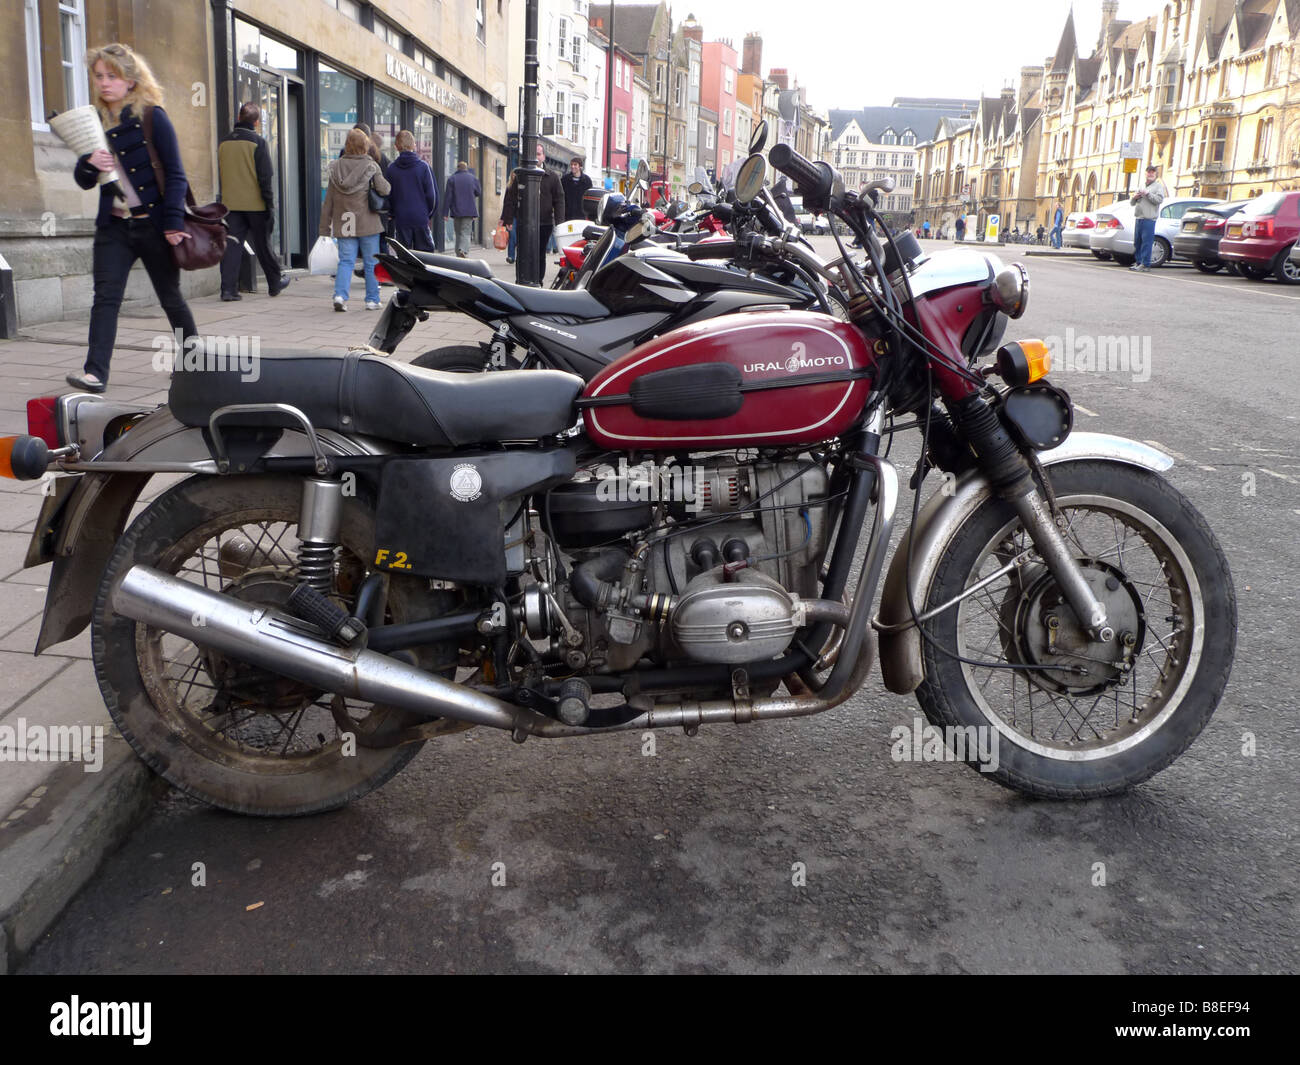 Ural Motor bike in Oxford city Stock Photo